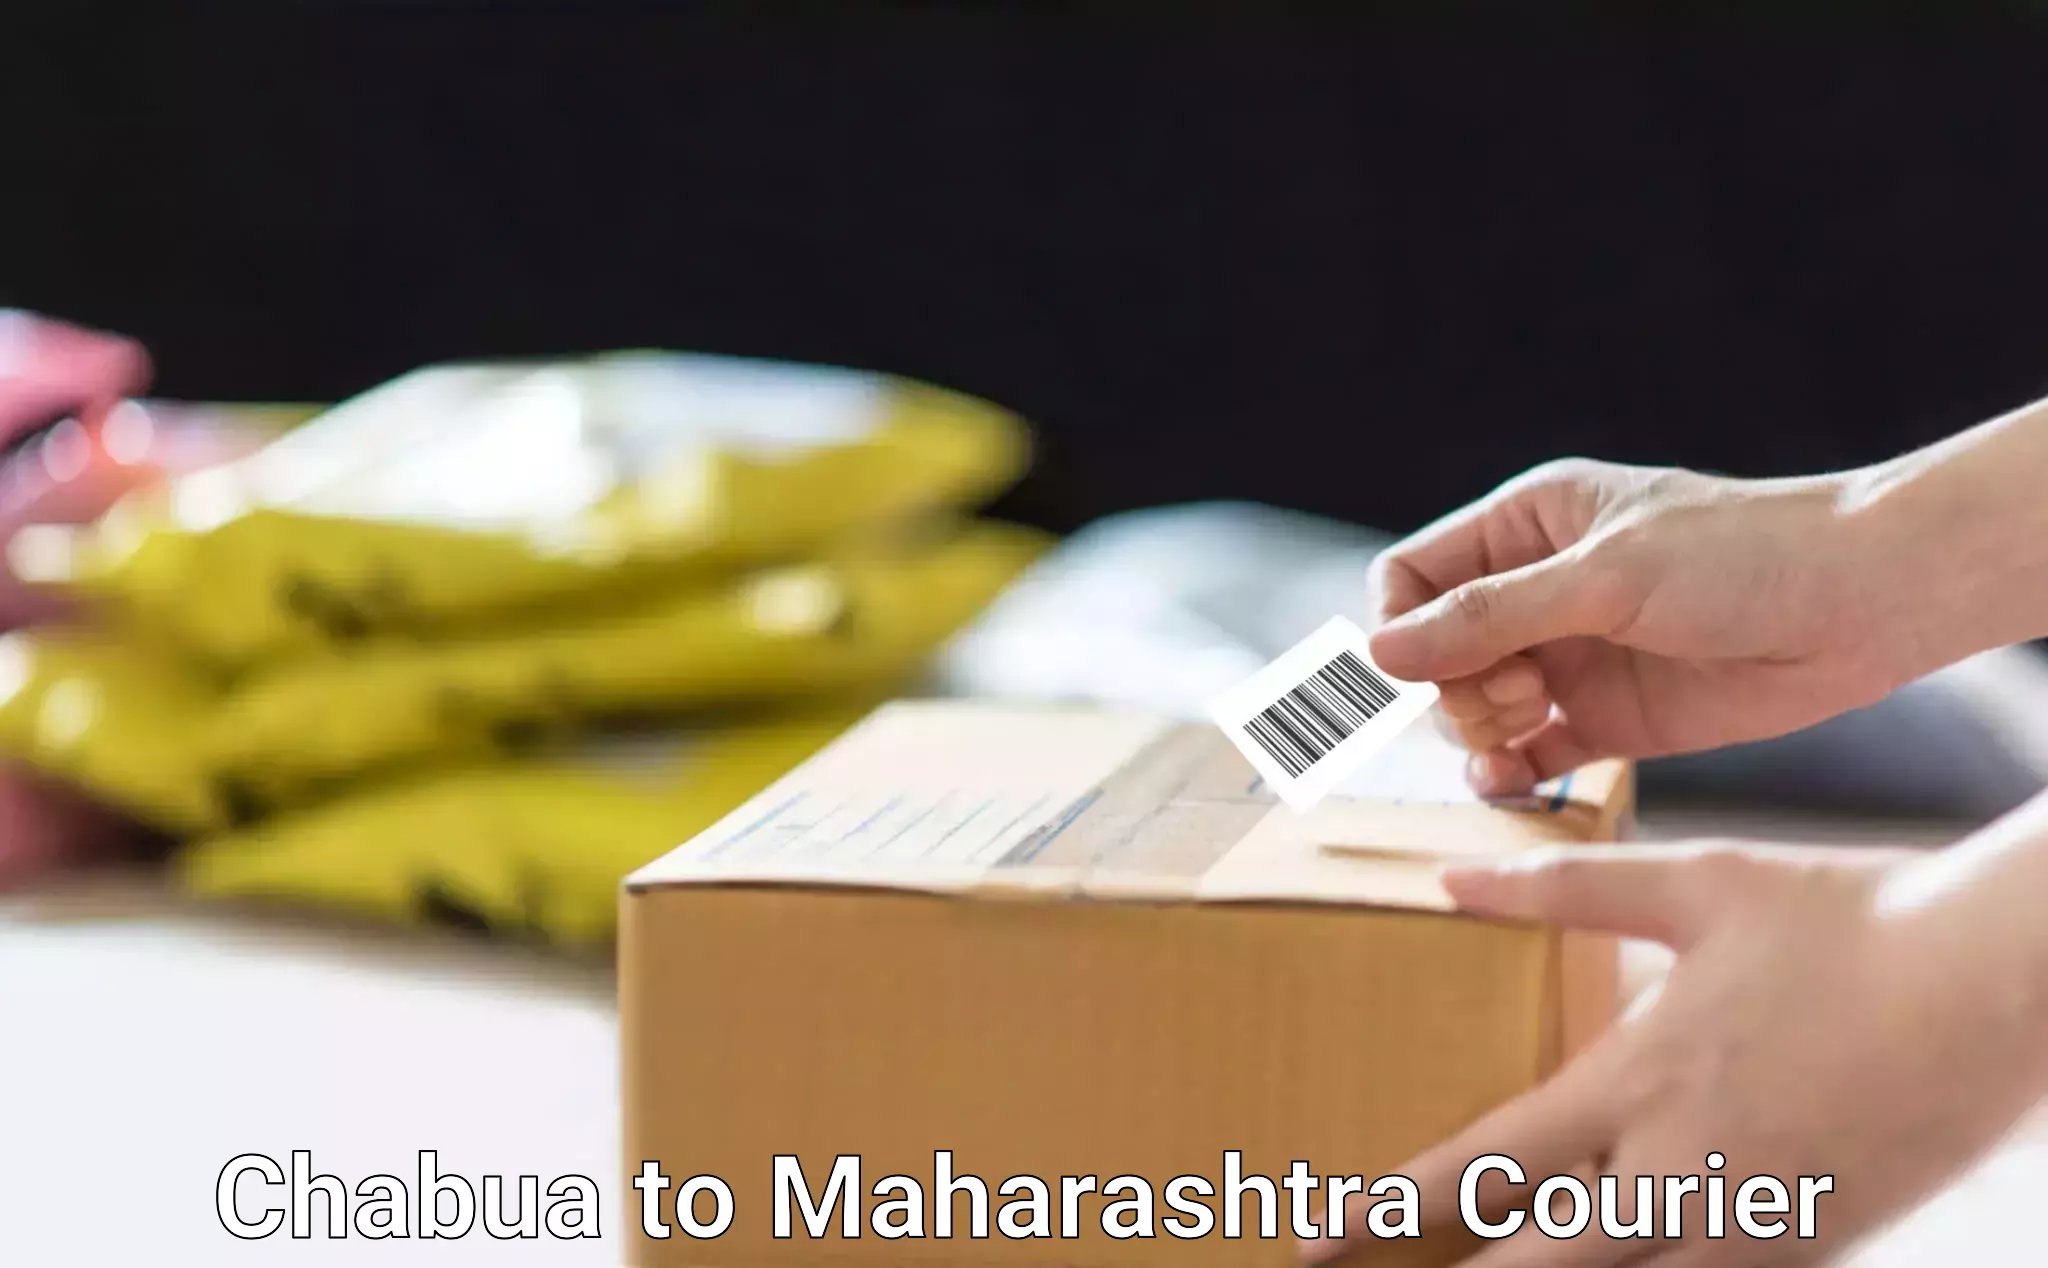 Reliable shipping partners Chabua to Maharashtra